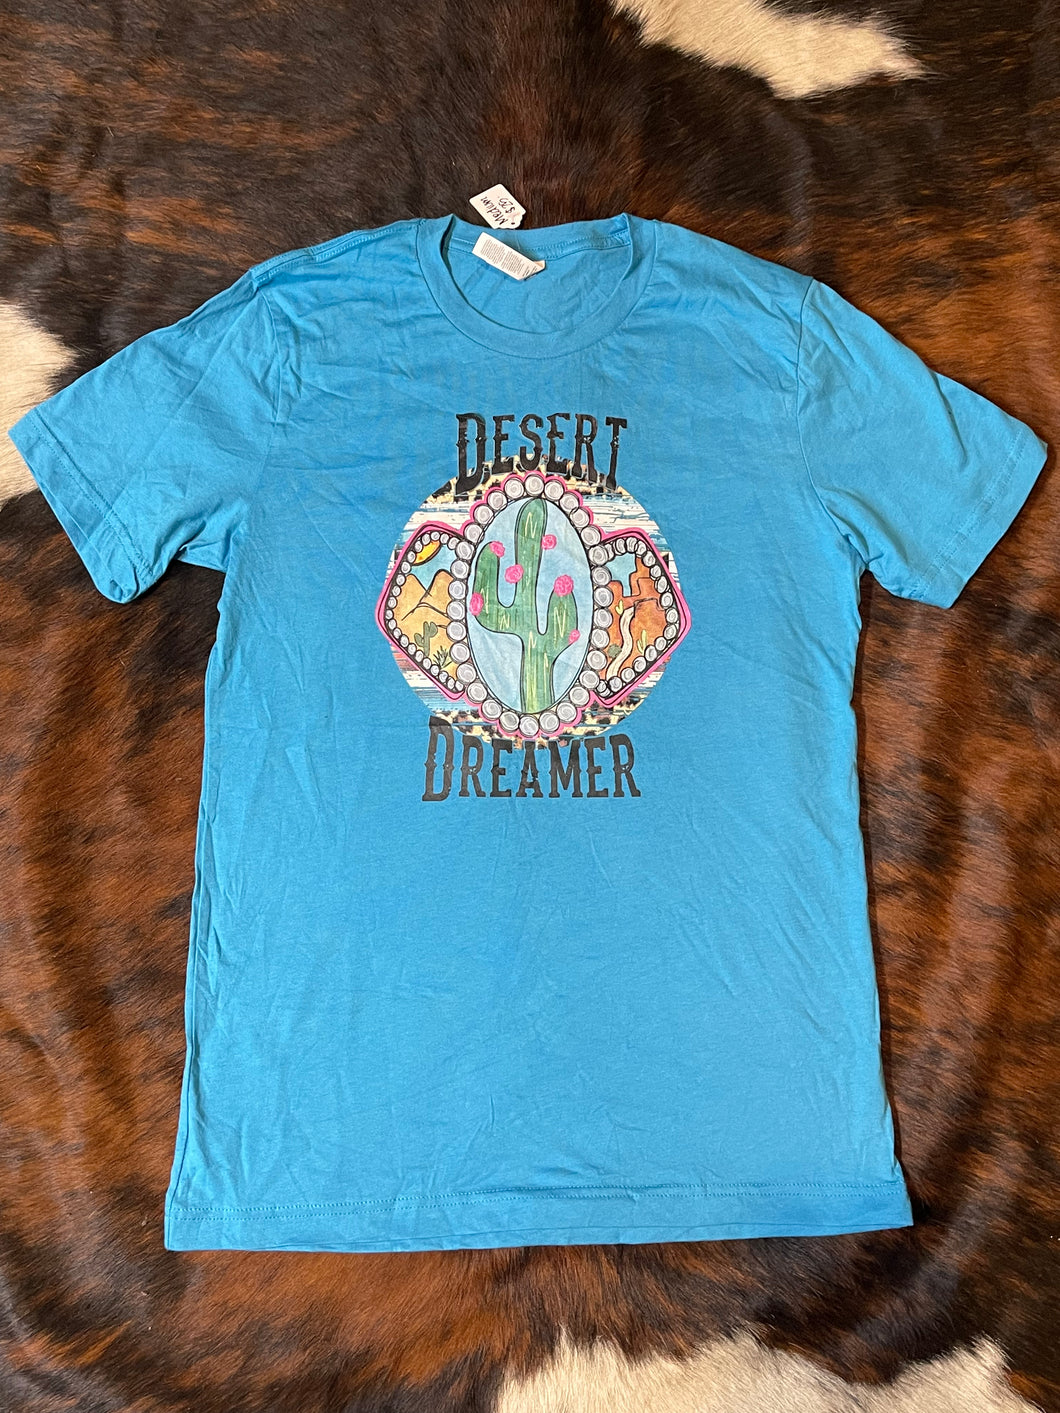 Desert Dreamer Tee (Medium)